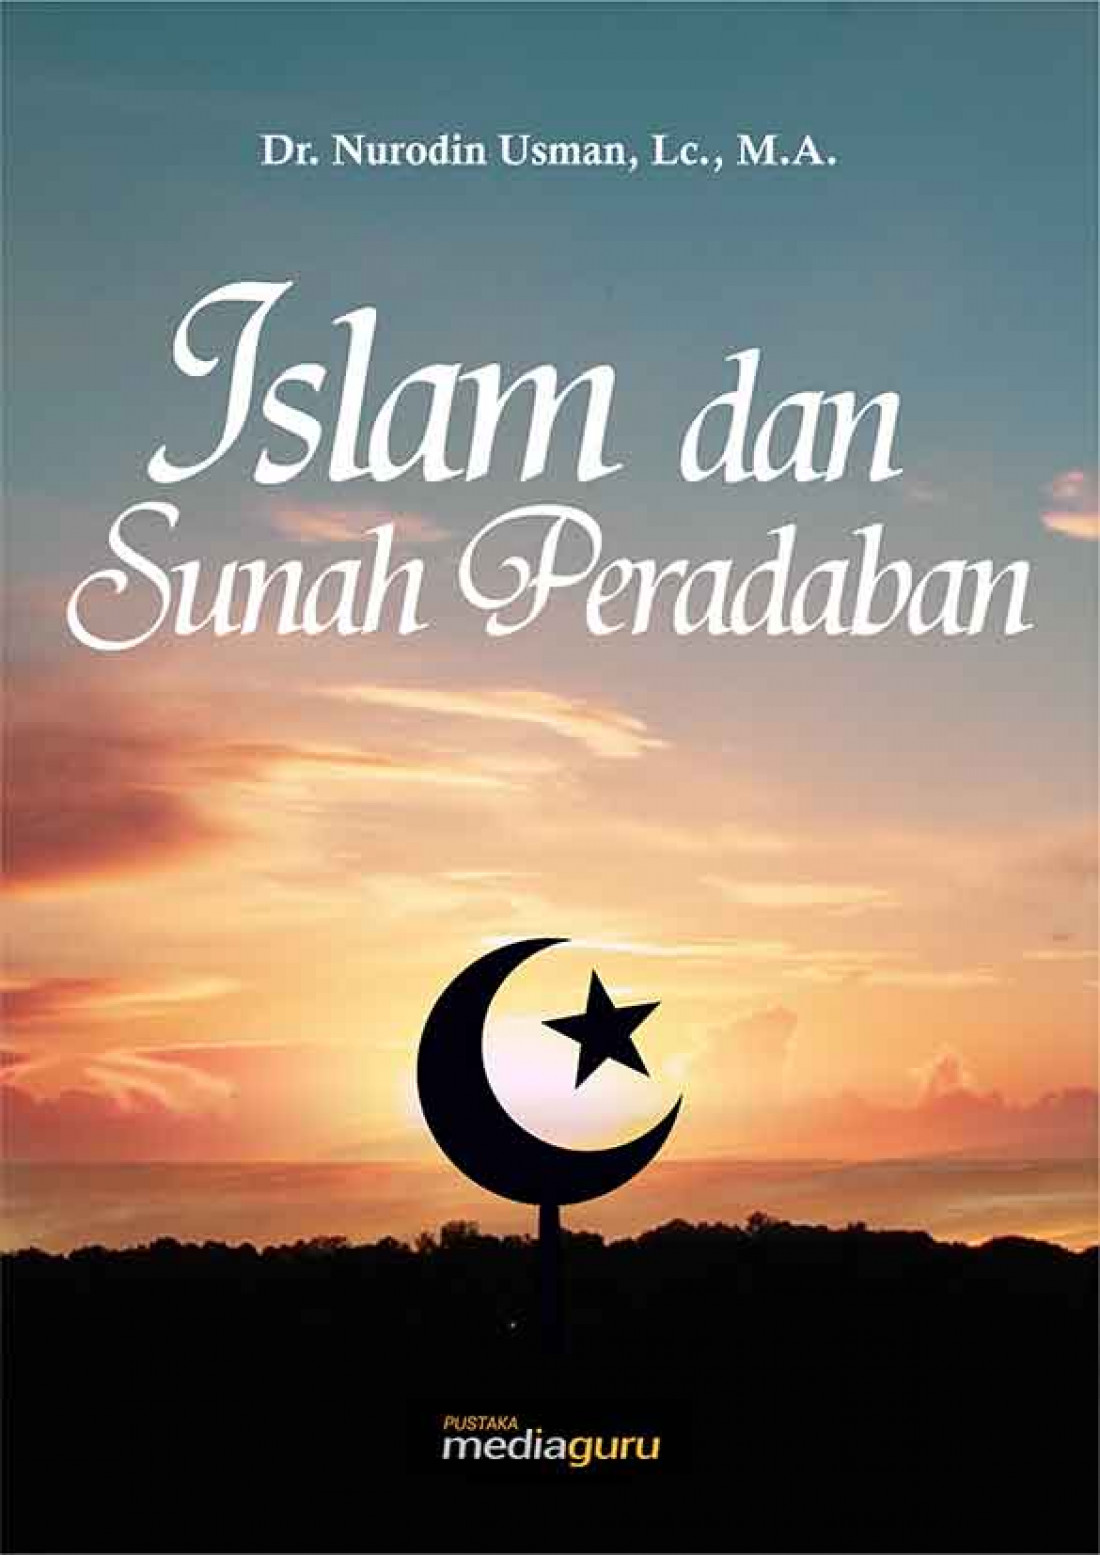 Islam dan Sunah Peradaban